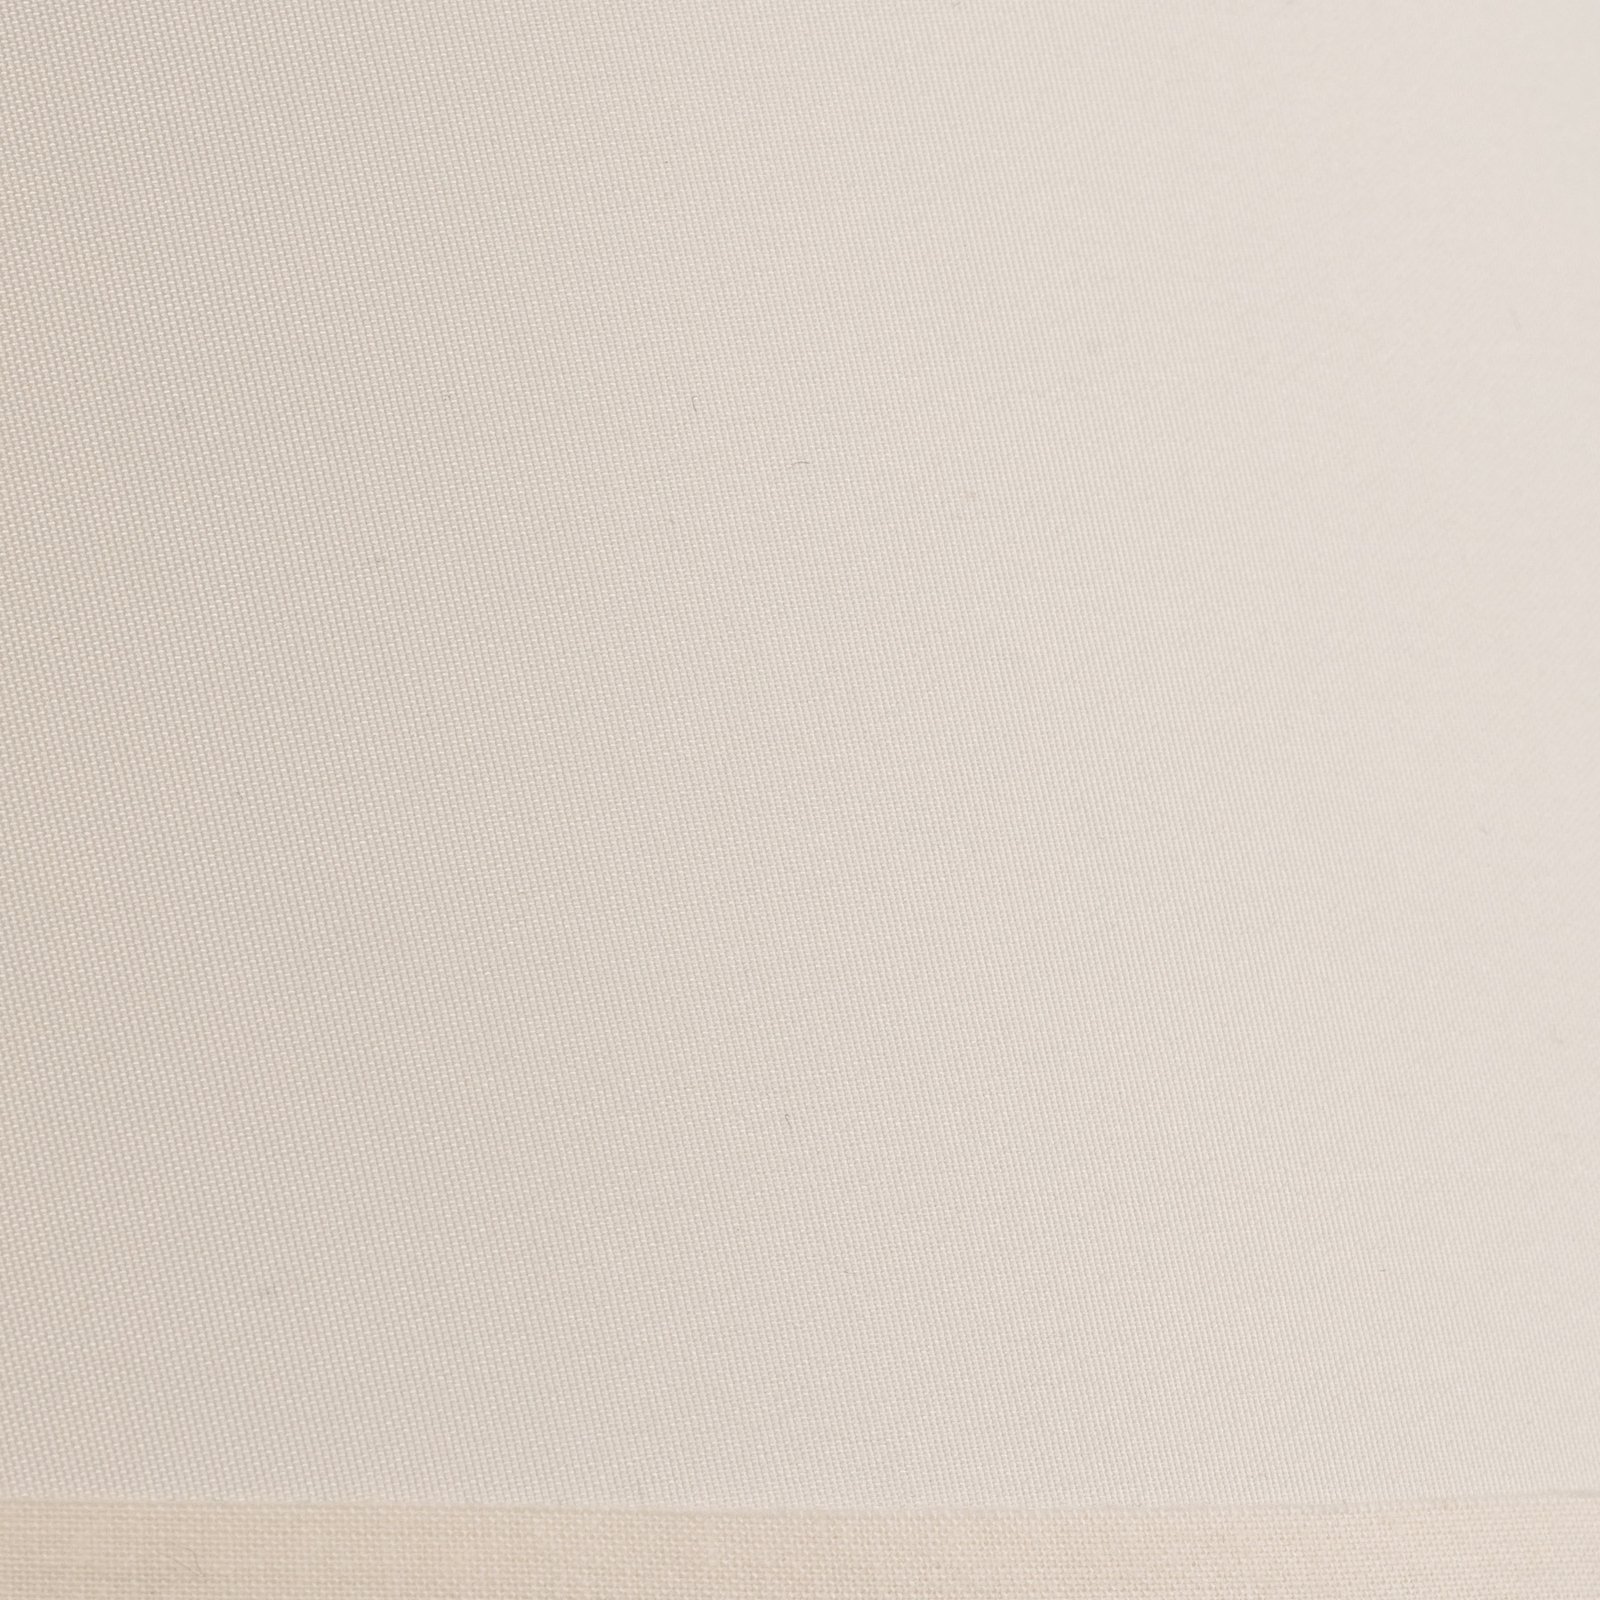 Abat-jour Sofia hauteur 21 cm, écru/blanc